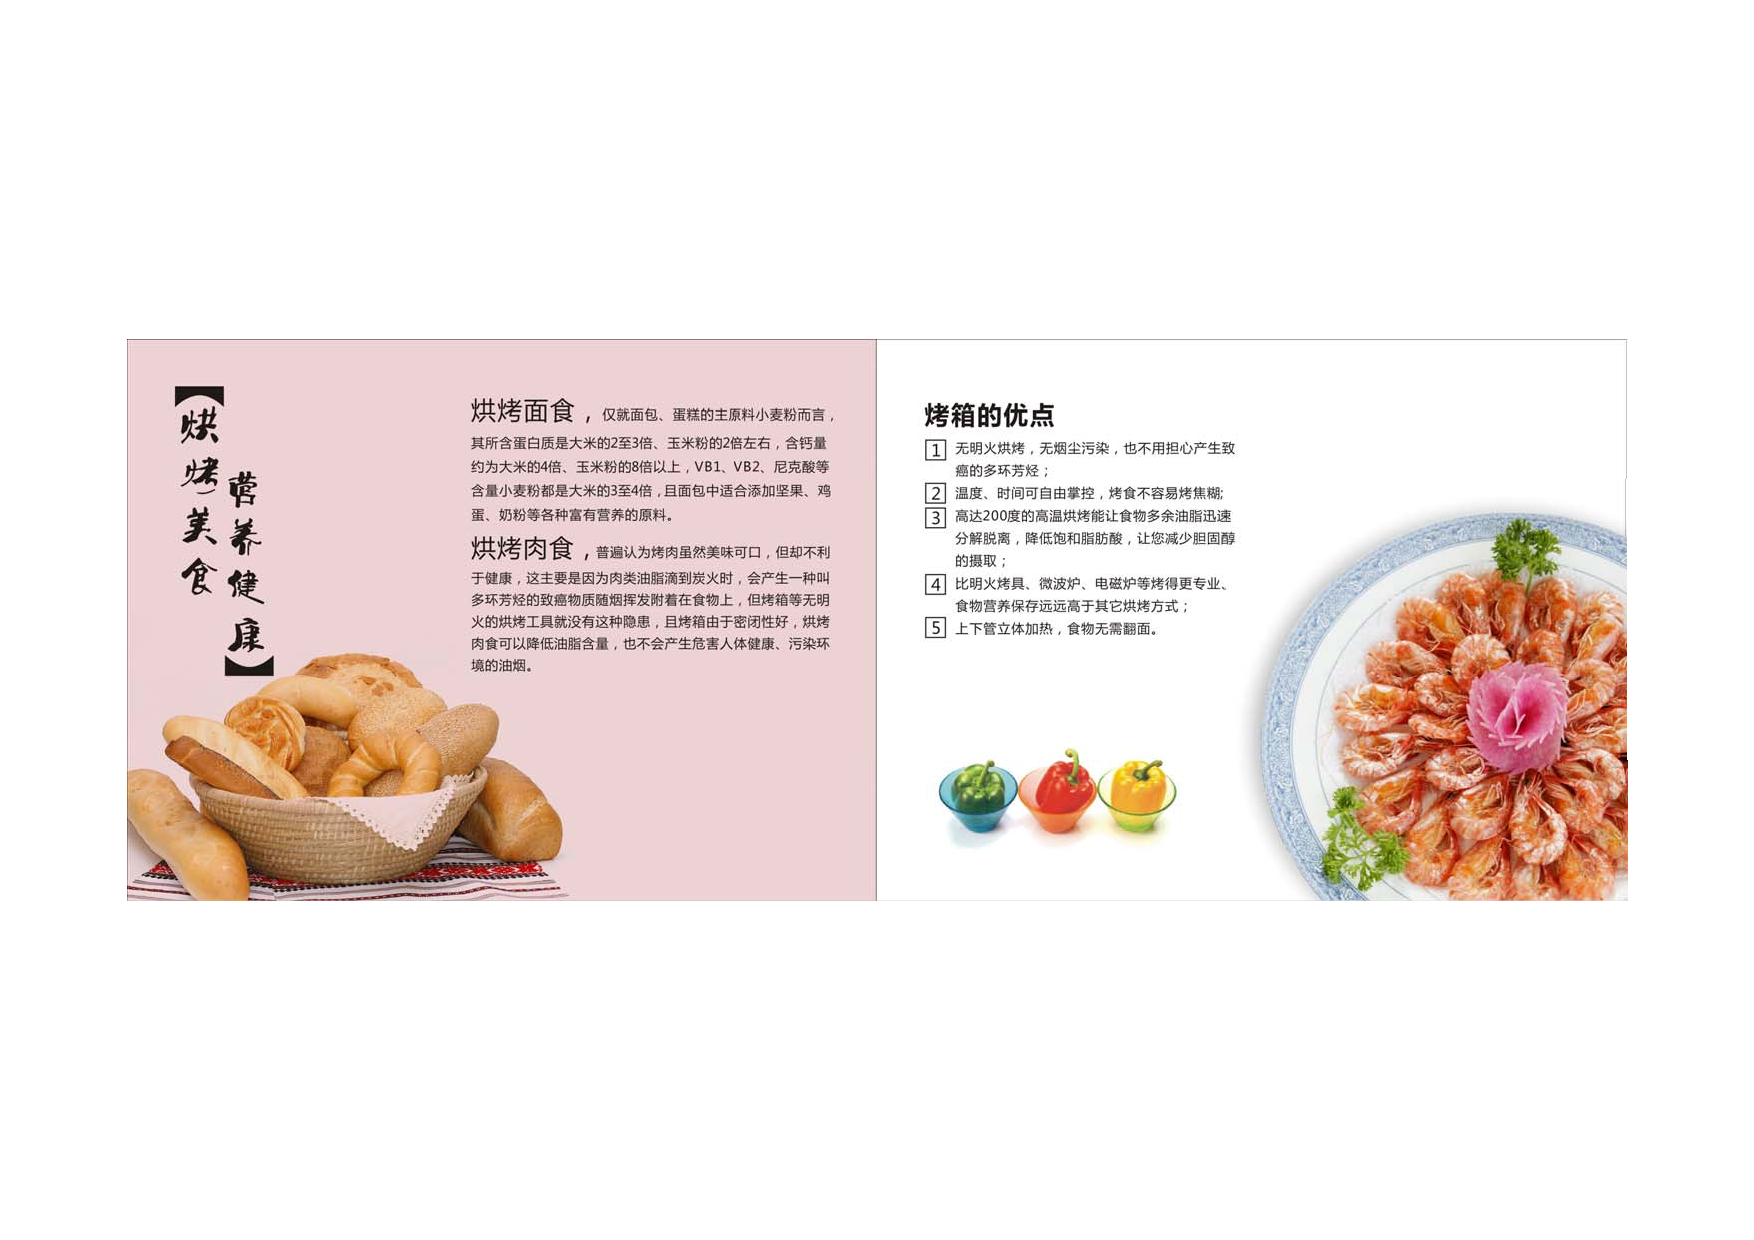 九阳 Joyyoung 电烤箱食谱-烘培 使用说明书 第1页